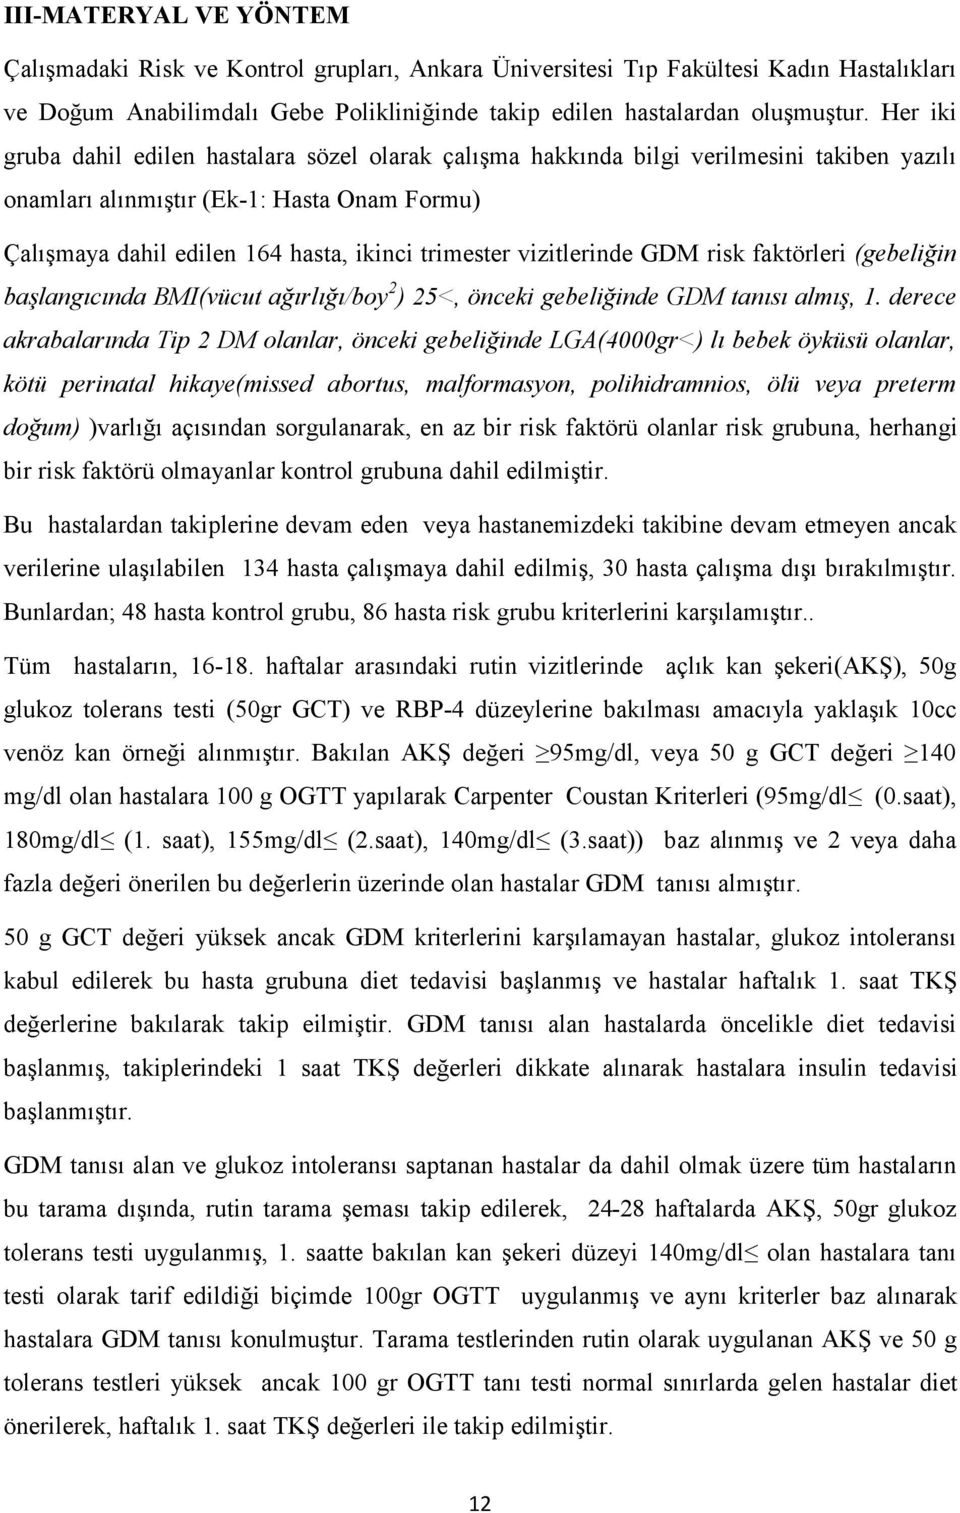 vizitlerinde GDM risk faktörleri (gebeliğin başlangıcında BMI(vücut ağırlığı/boy 2 ) 25<, önceki gebeliğinde GDM tanısı almış, 1.